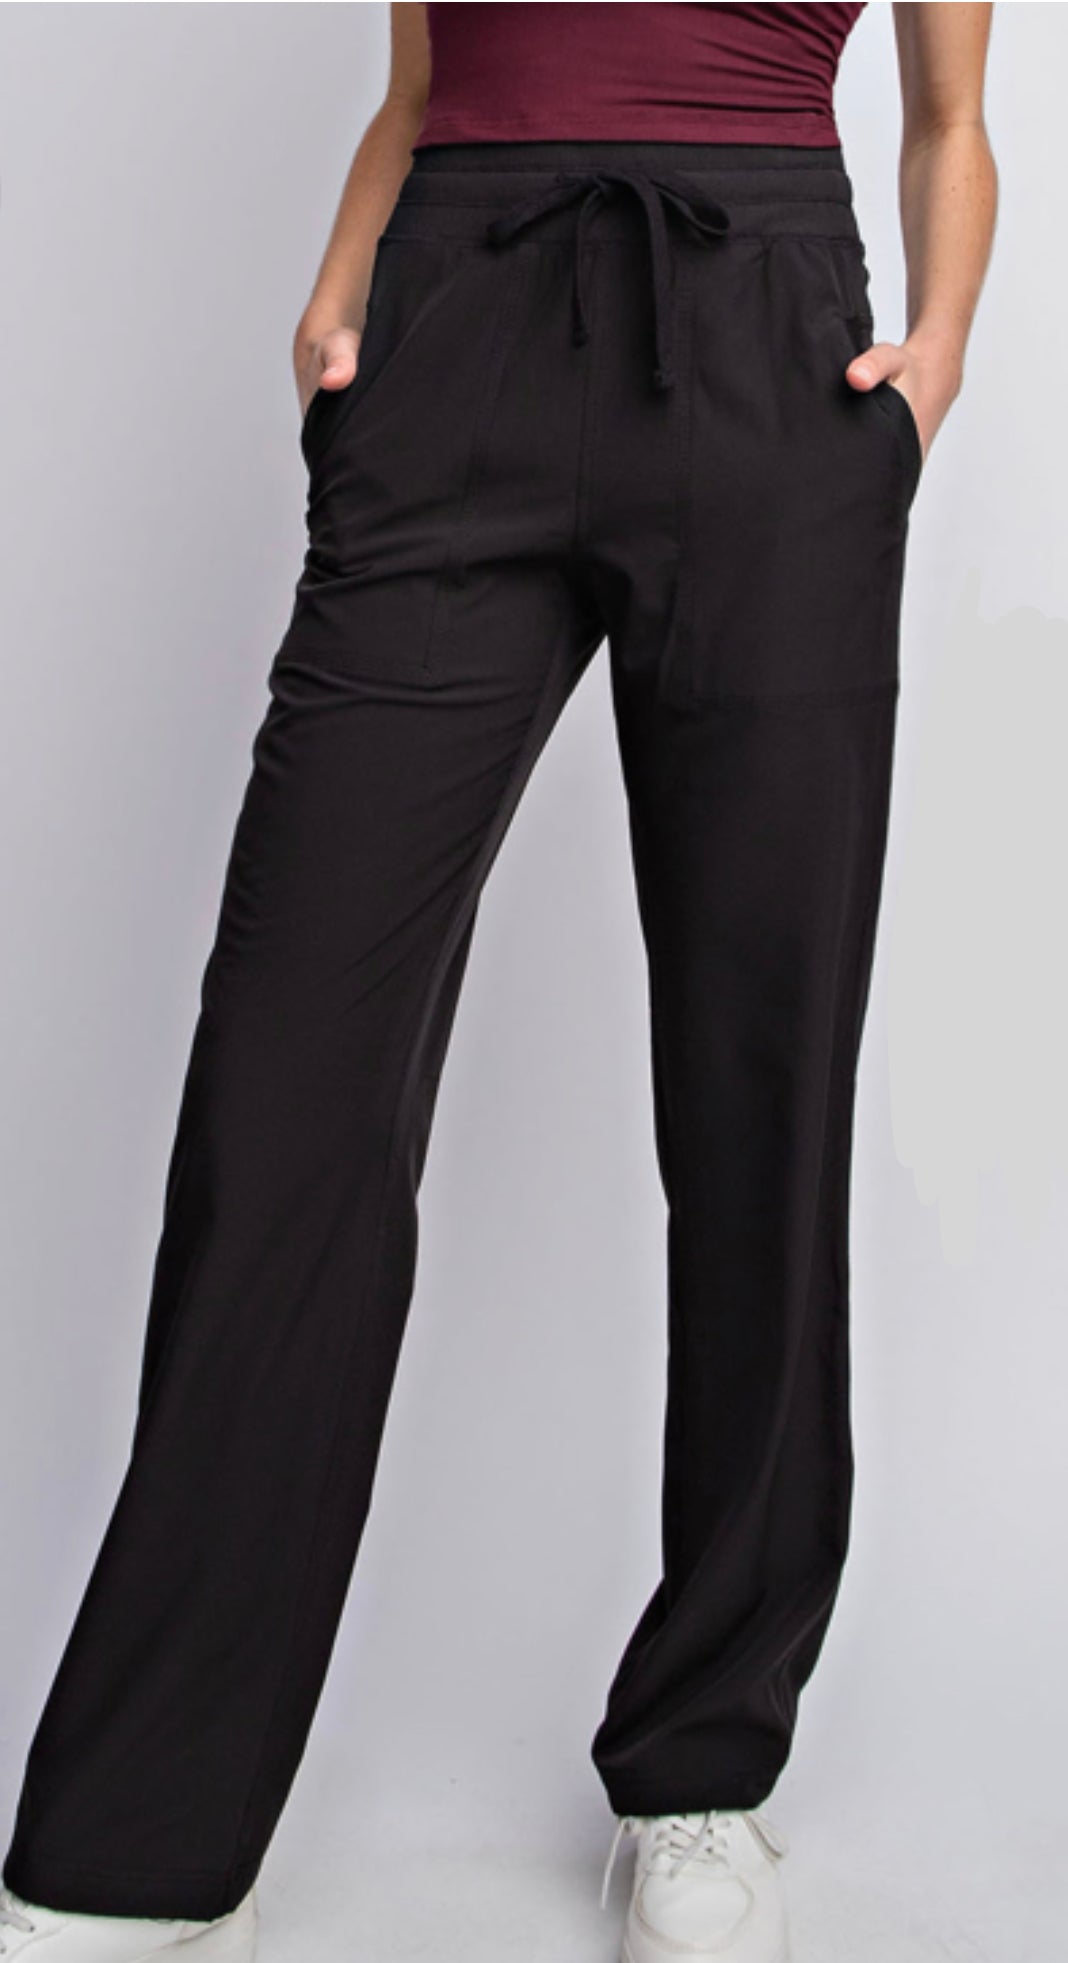 Black Straight Studio Dance pants – Gretchen's Size Inclusive Boutique